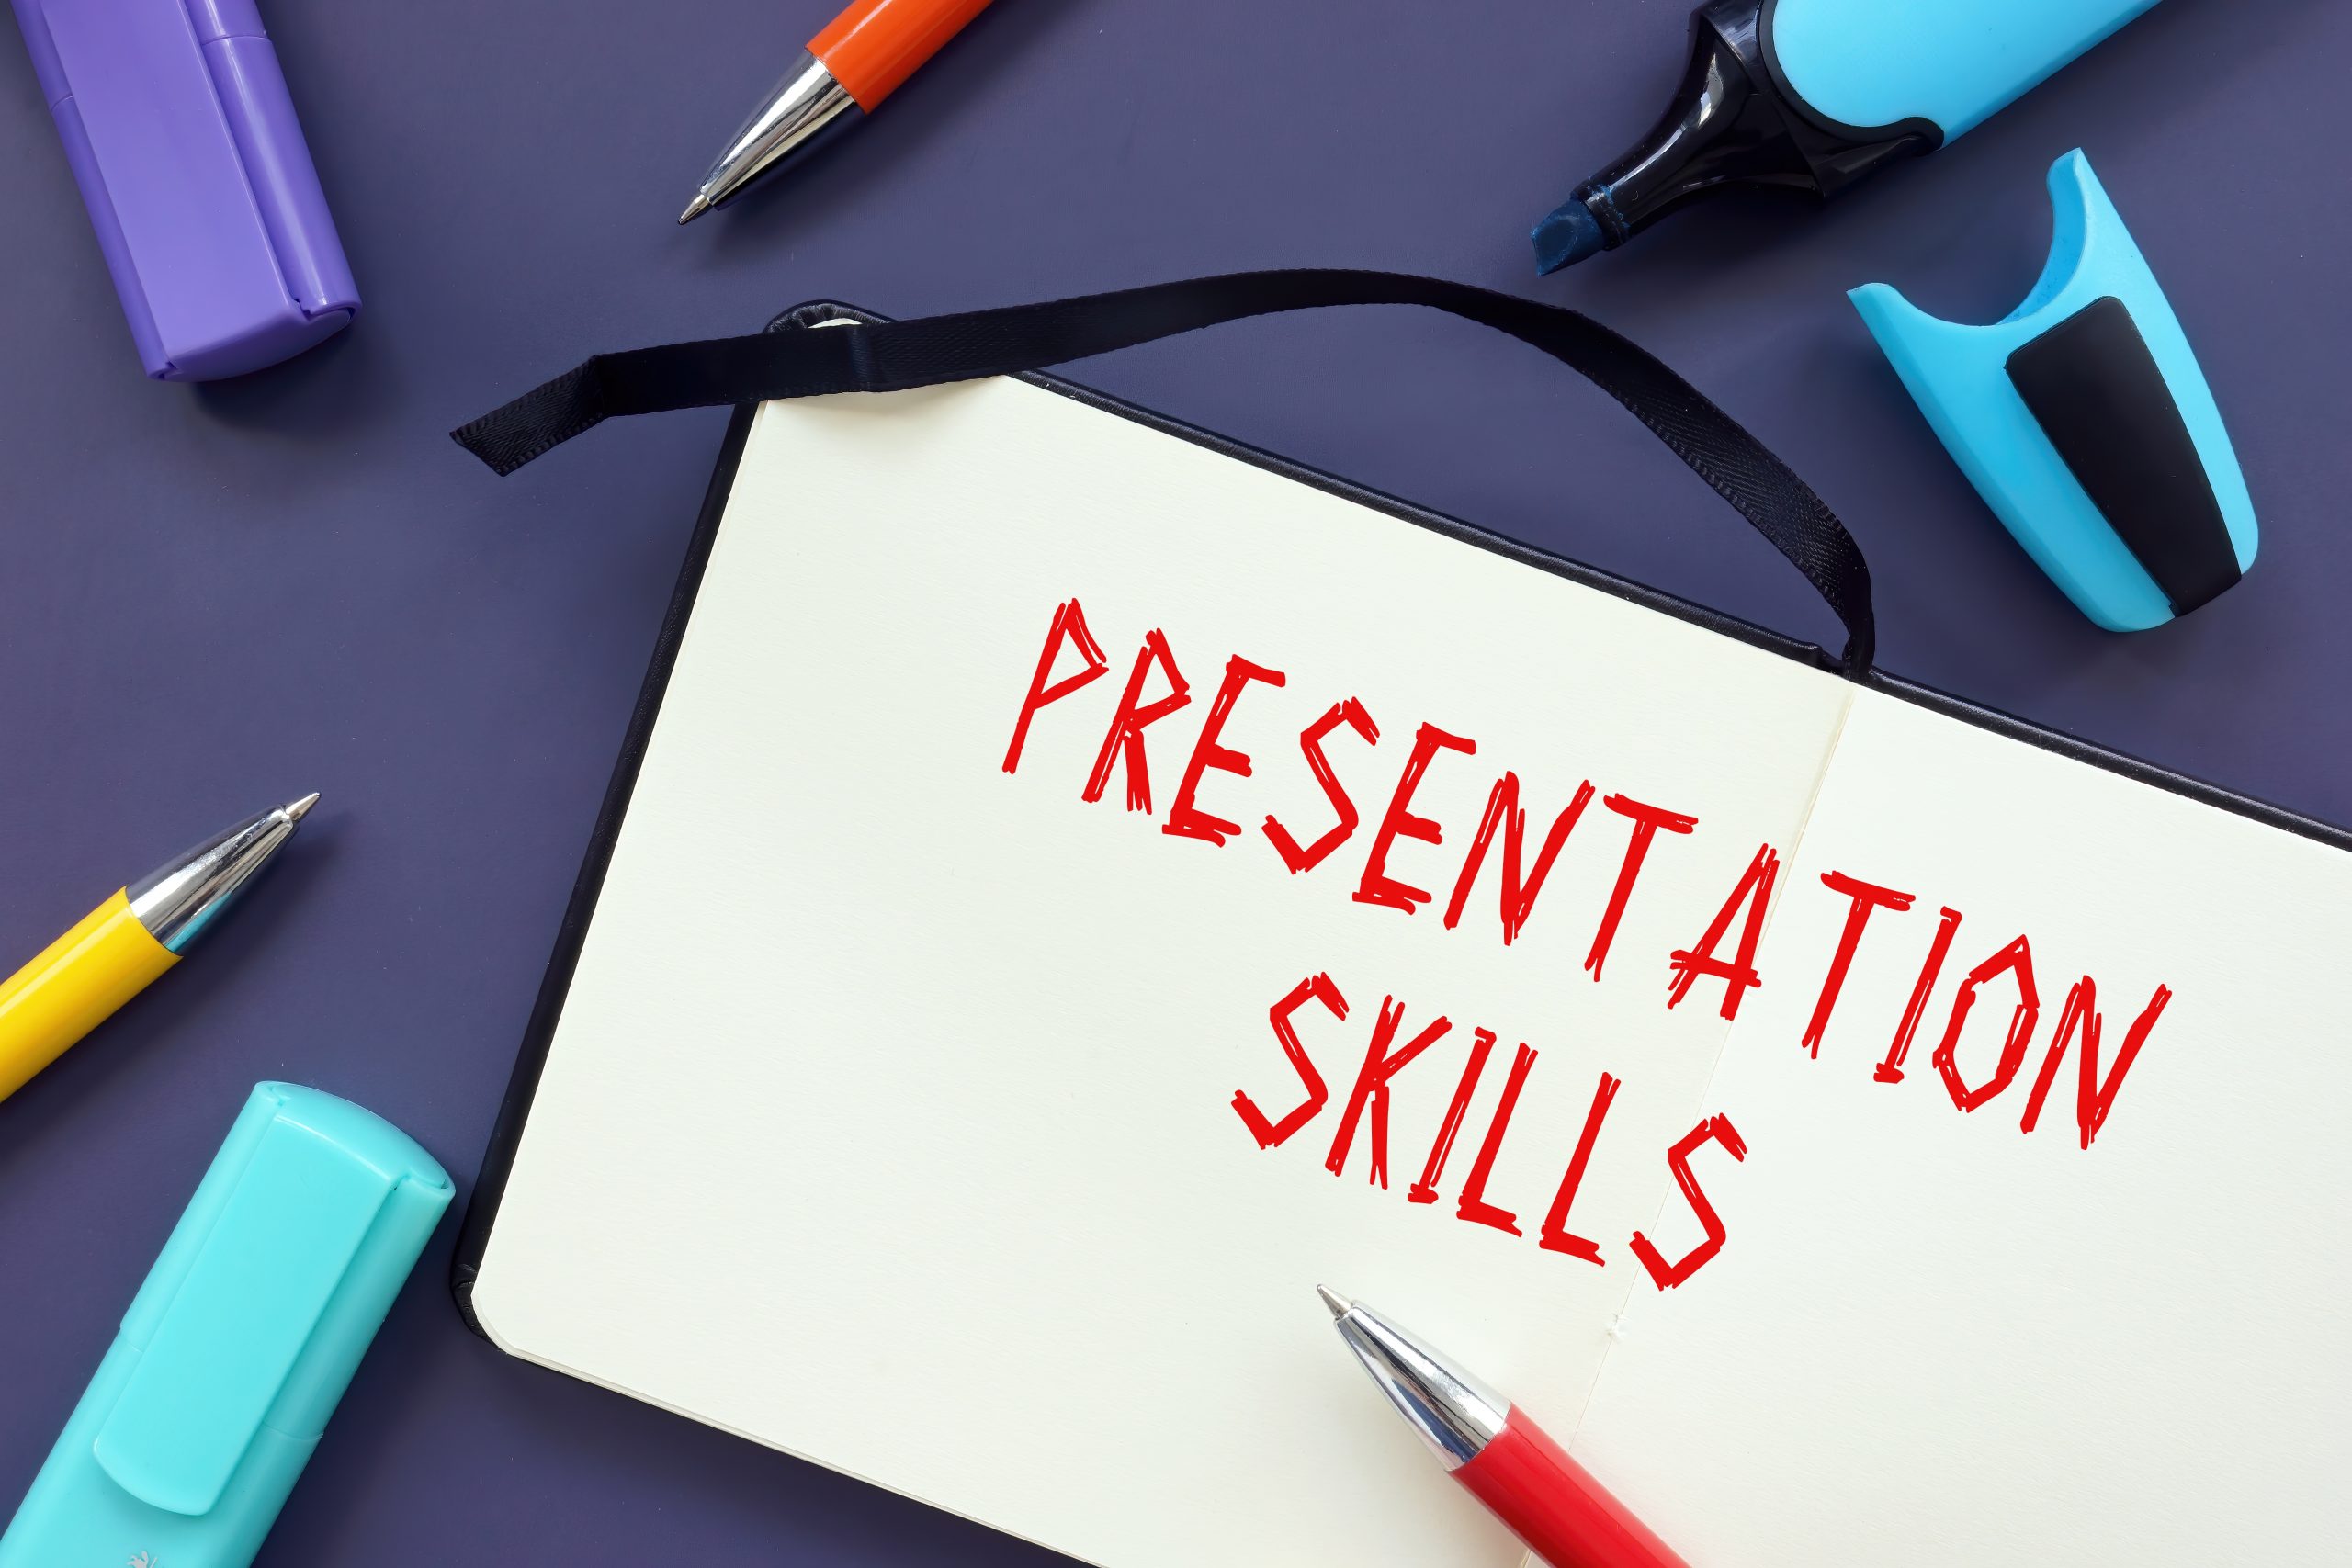 presentation skills soft skills